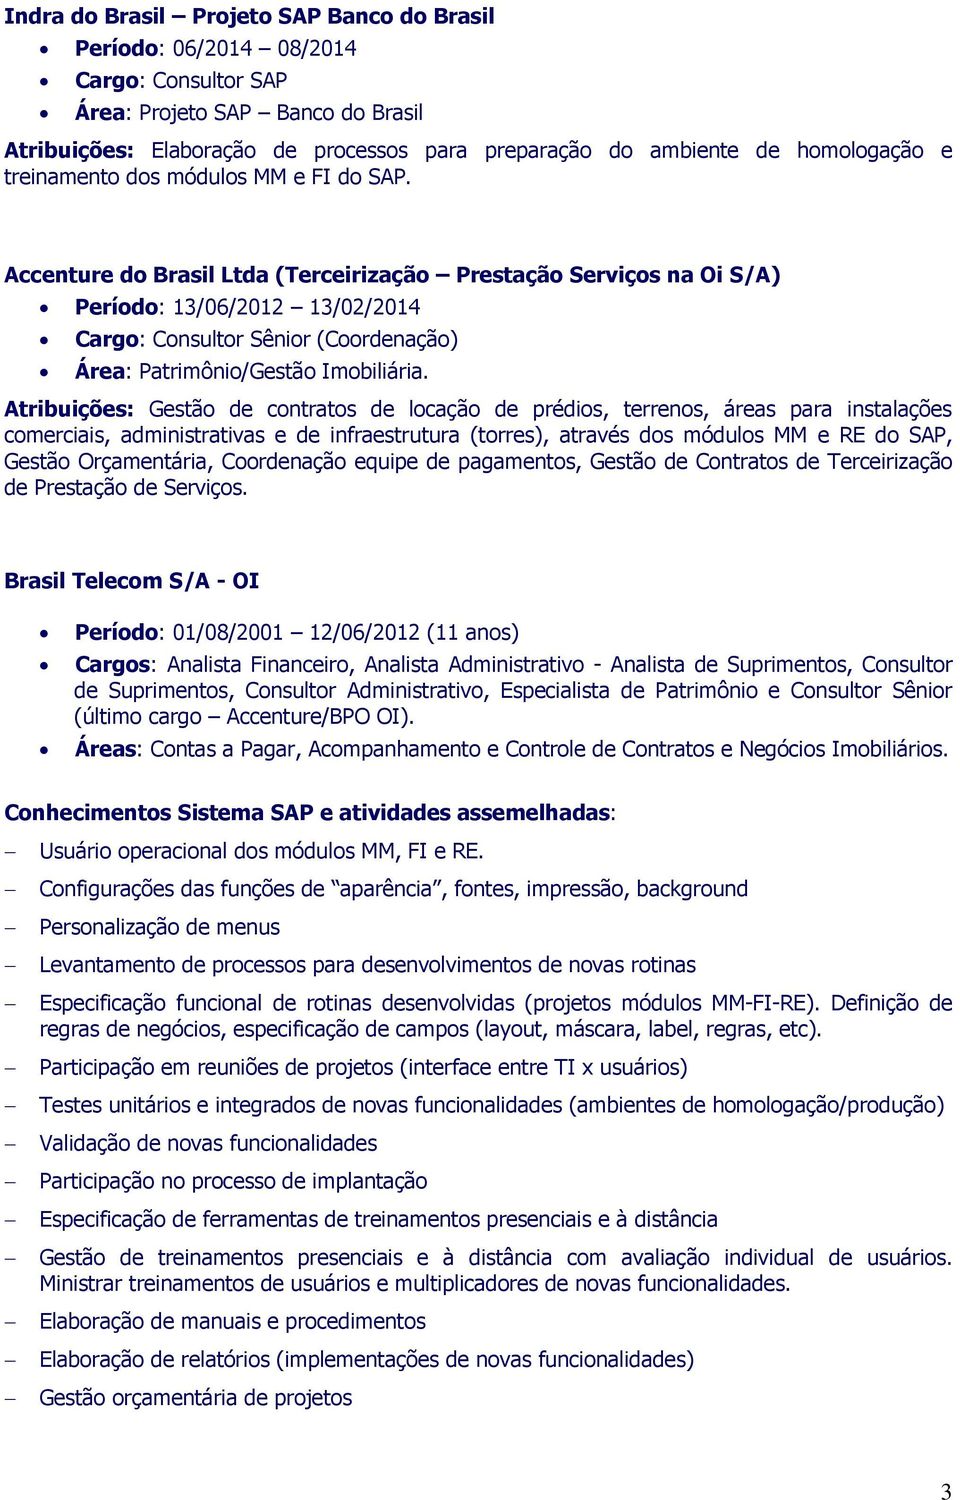 Accenture do Brasil Ltda (Terceirização Prestação Serviços na Oi S/A) Período: 13/06/2012 13/02/2014 Cargo: Consultor Sênior (Coordenação) Área: Patrimônio/Gestão Imobiliária.